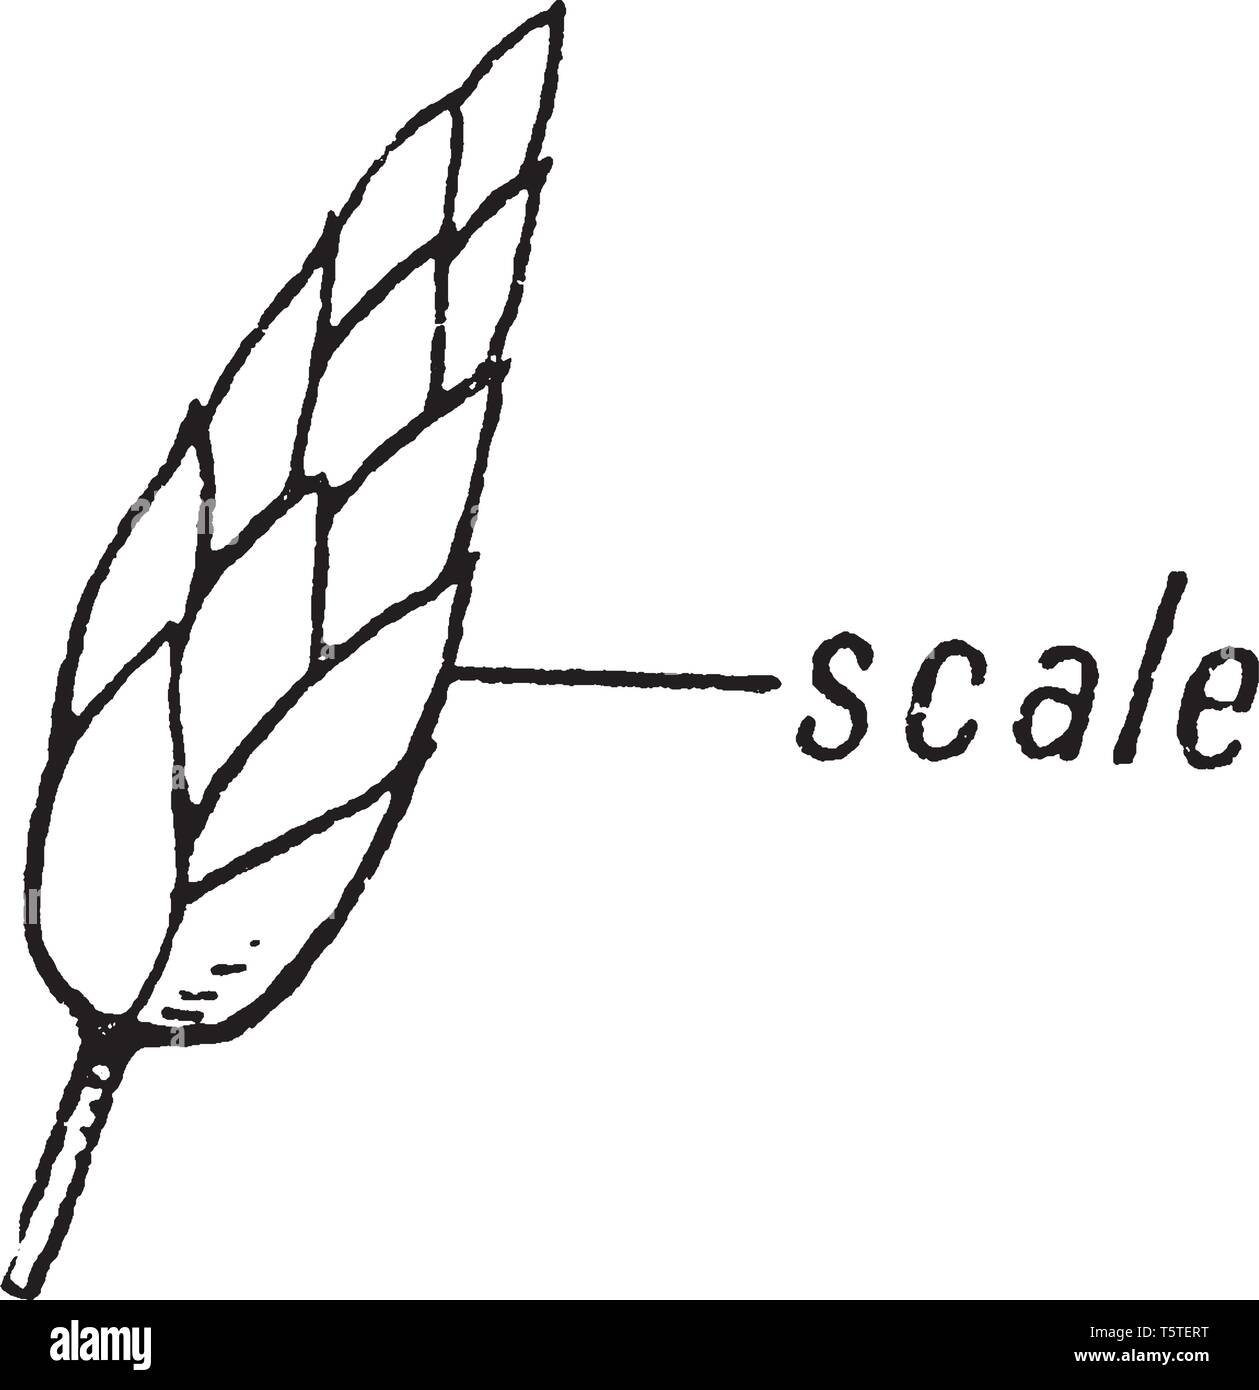 Bild zeigt die ährchen Teil Segge Morphologie der Pflanze. Es zeigt die Skala Teil einer ährchen. Segge Morphologie hat ährchen wie Strukturen, Inter Stock Vektor